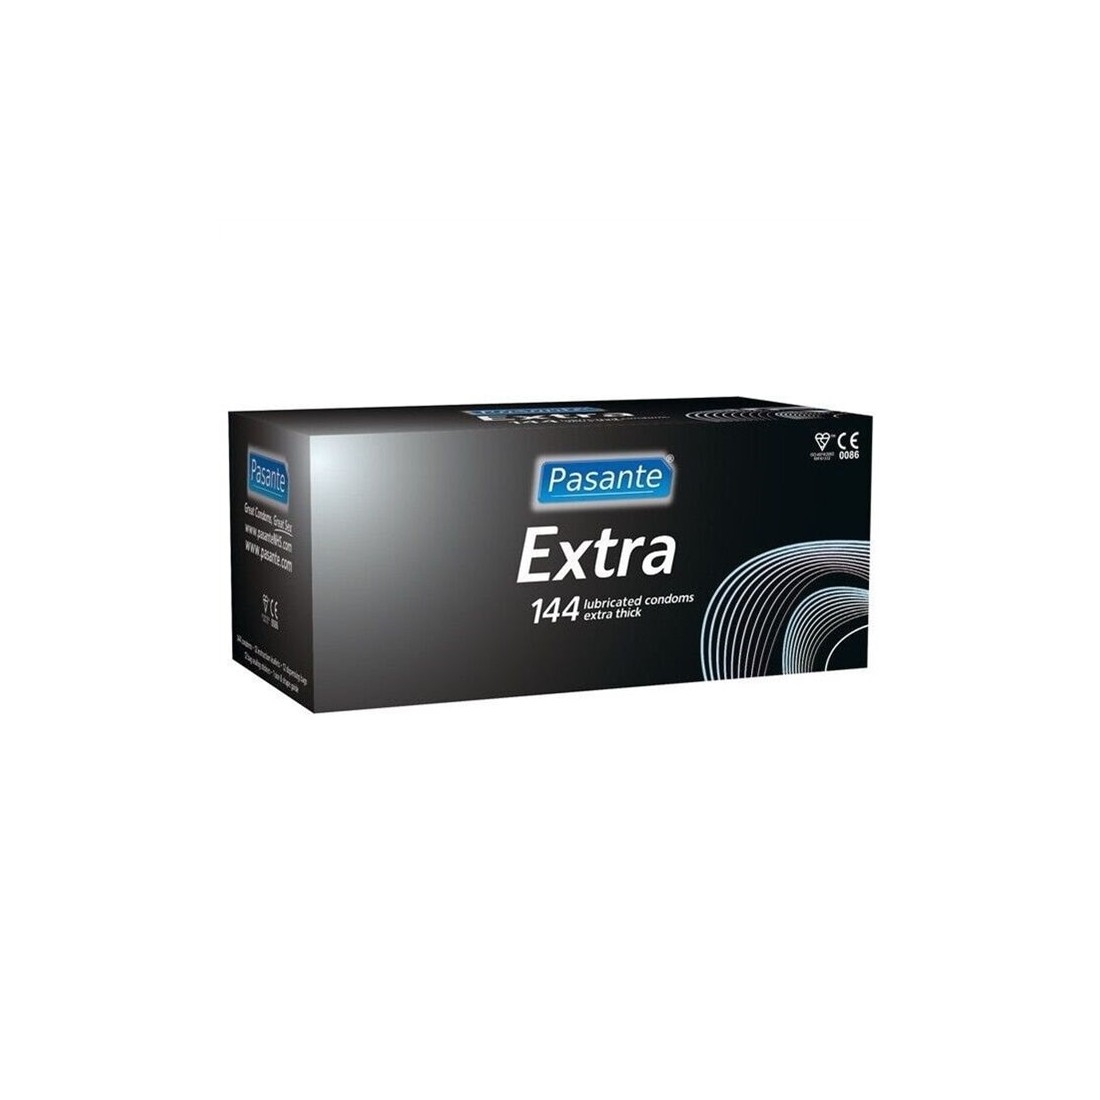 Preservativos Pasante Condoms Extra 144 Unidades - PR2010362978